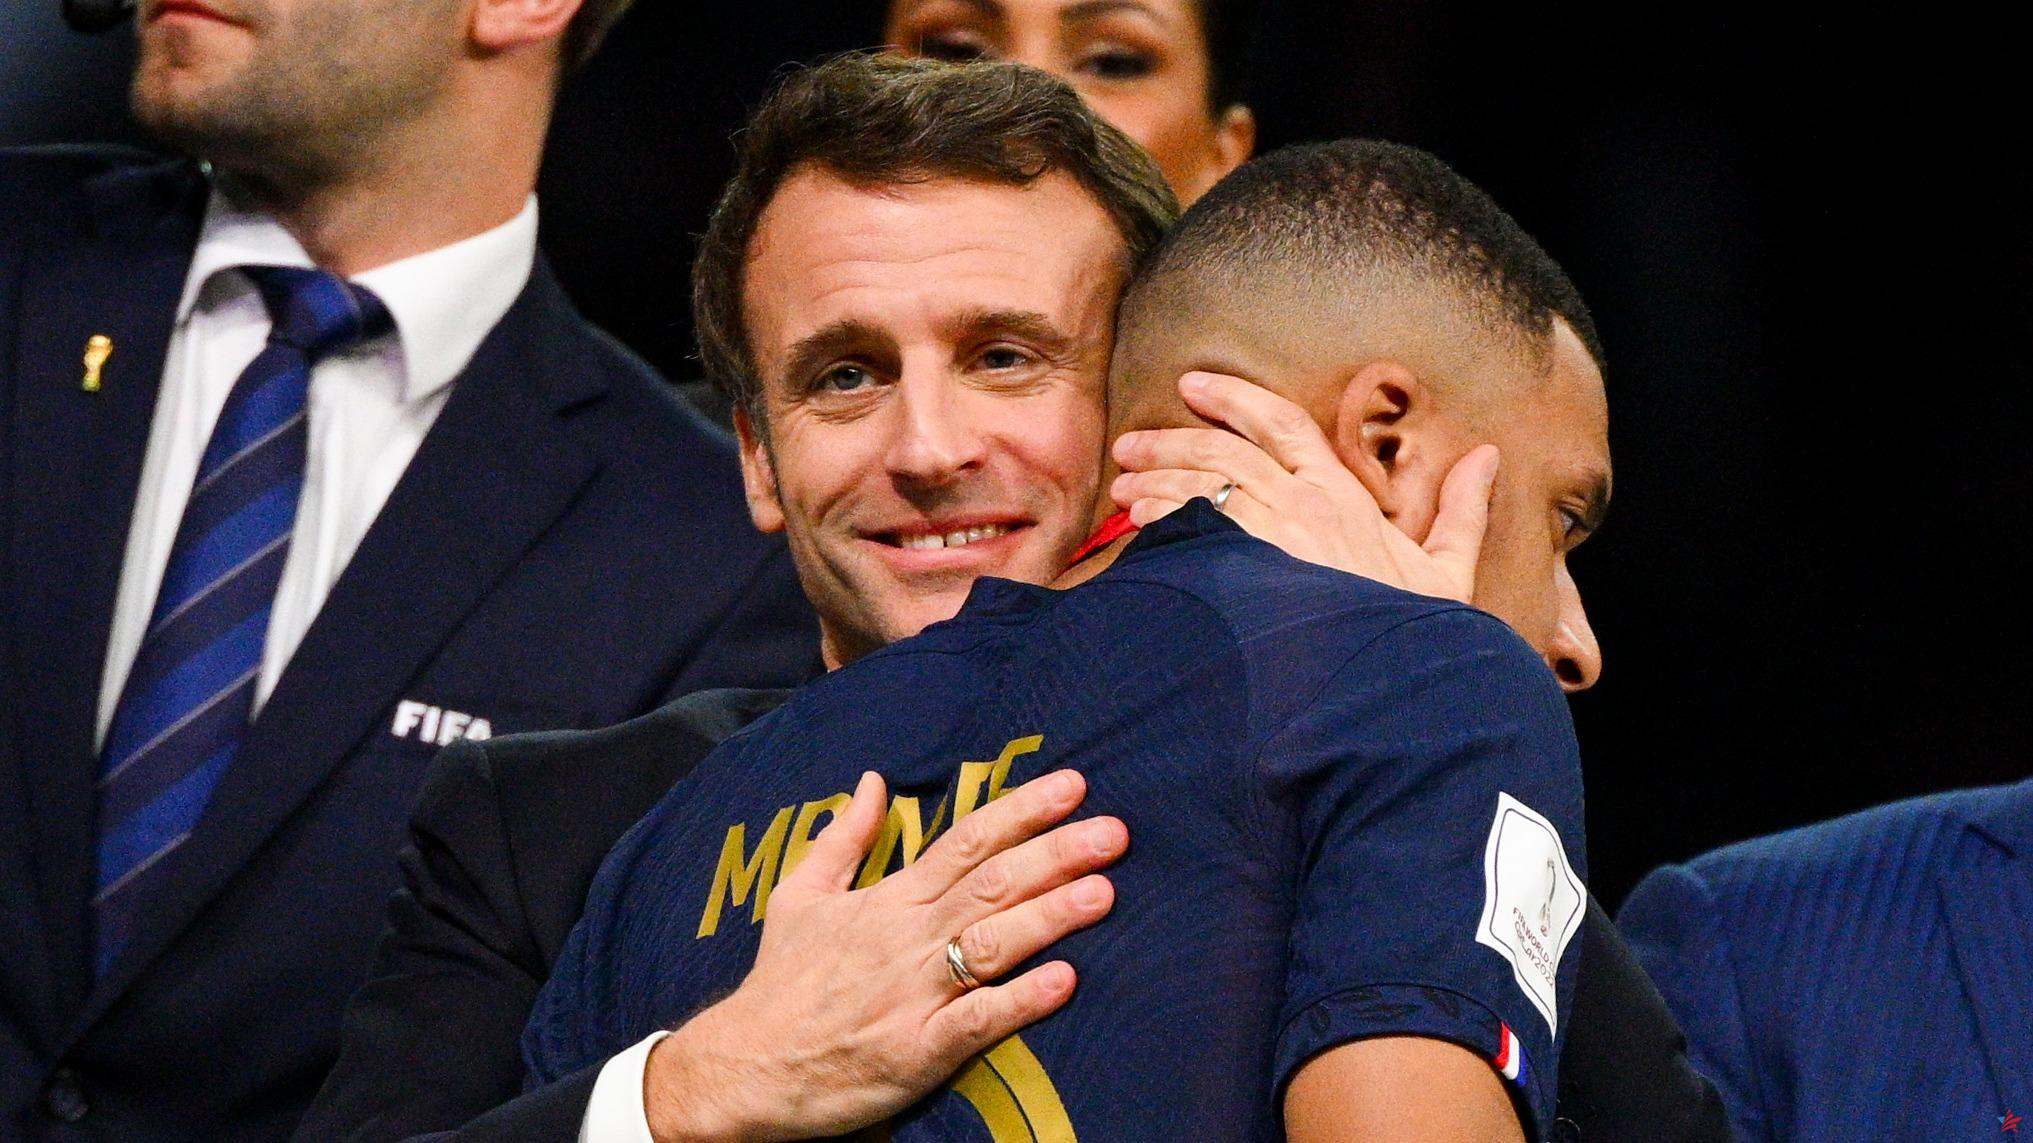 Juegos Olímpicos de París 2024: “Espero que su club lo deje especialmente”, Macron quiere ver a Mbappé en los Juegos